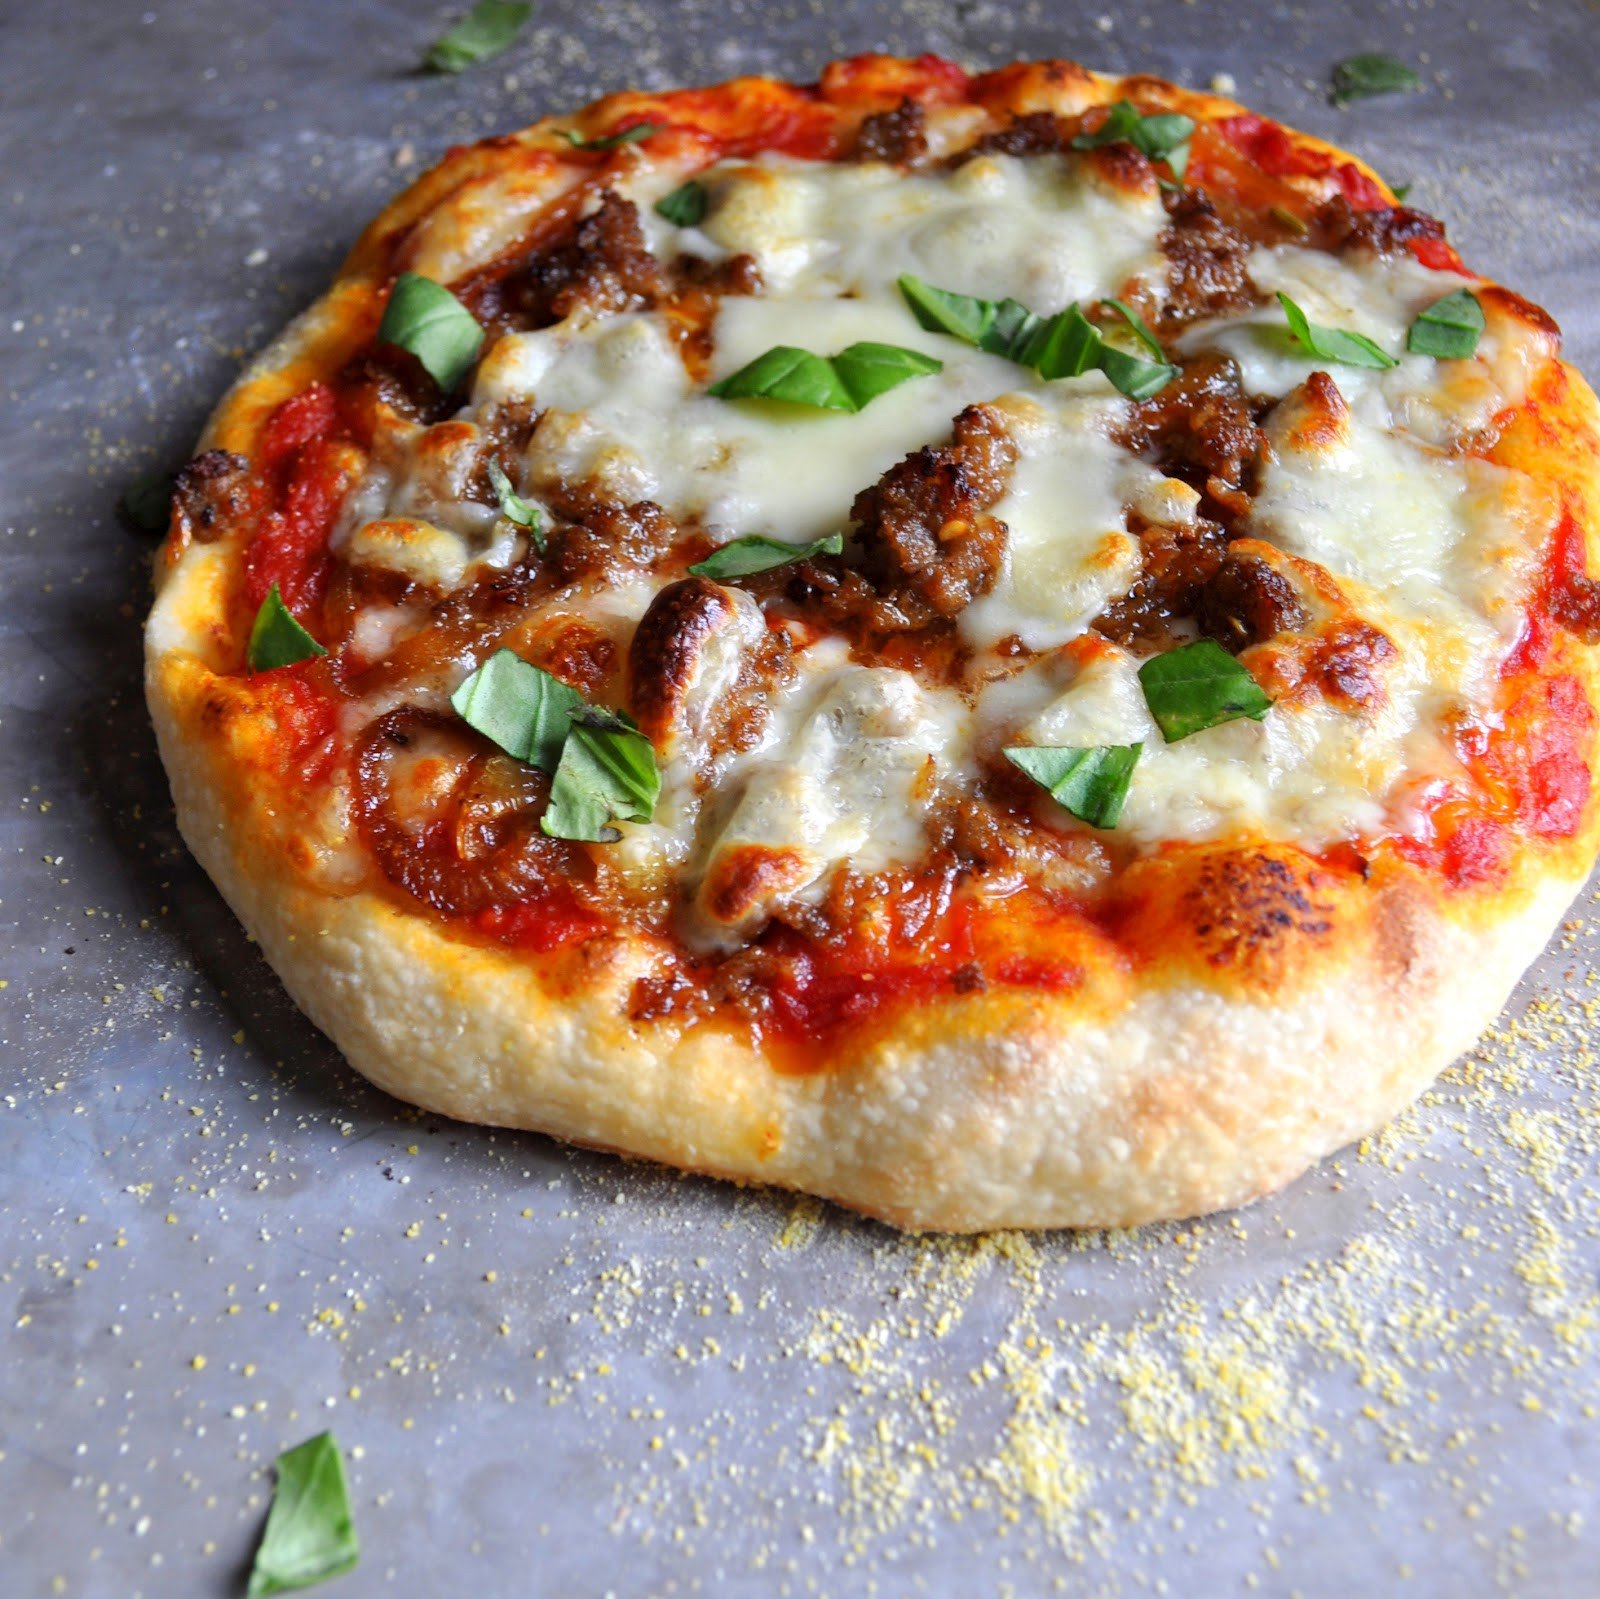 тесто для пиццы как в пиццерии тонкое без дрожжей рецепт вкусное нежное фото 72